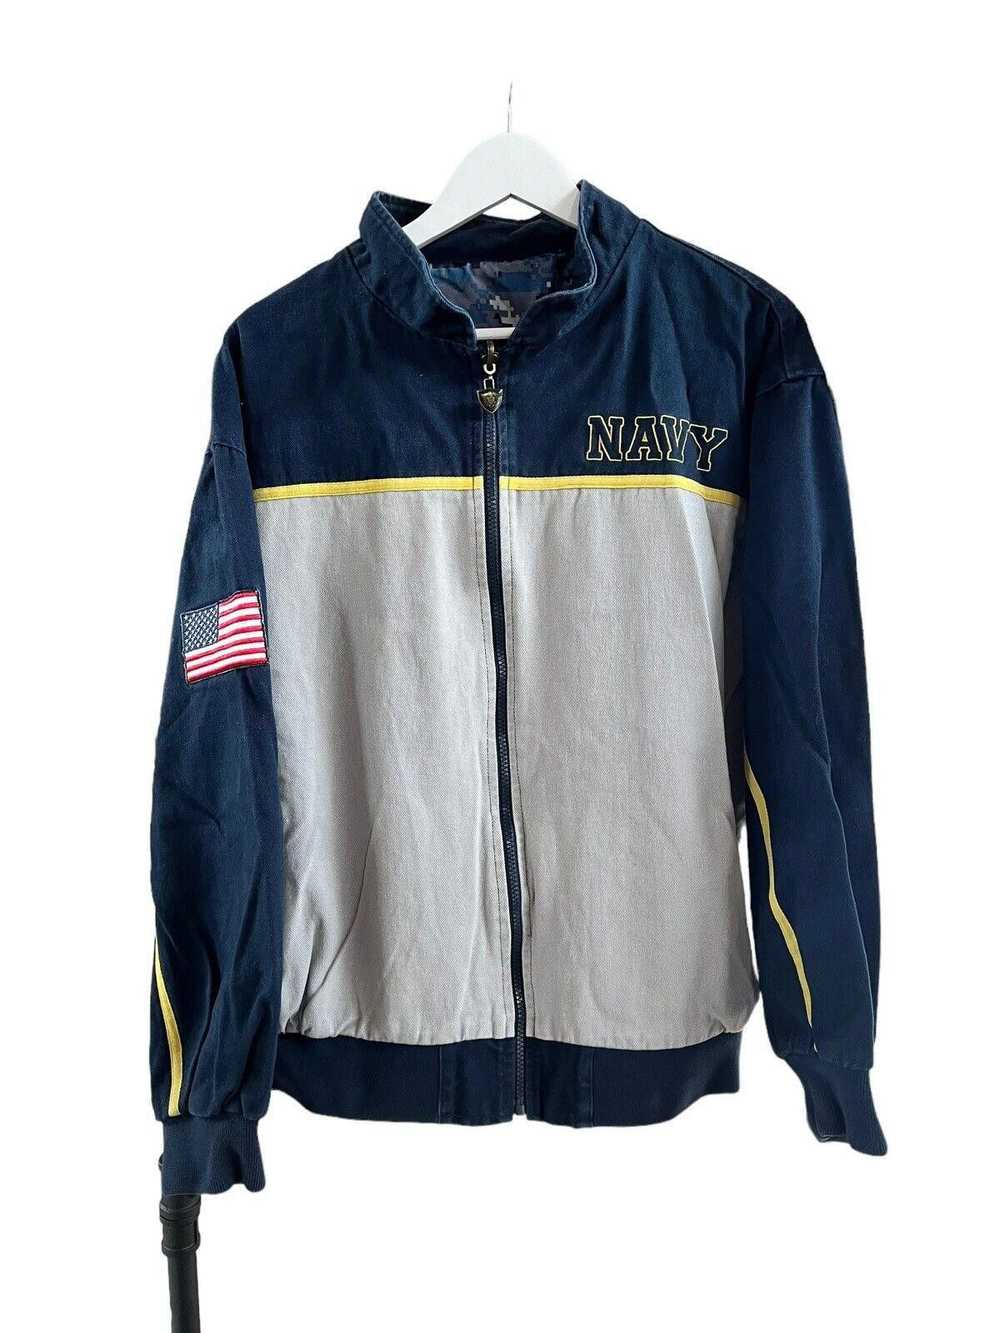 Designer 2011 Navy USA Reversible Jacket Men’s Me… - image 3